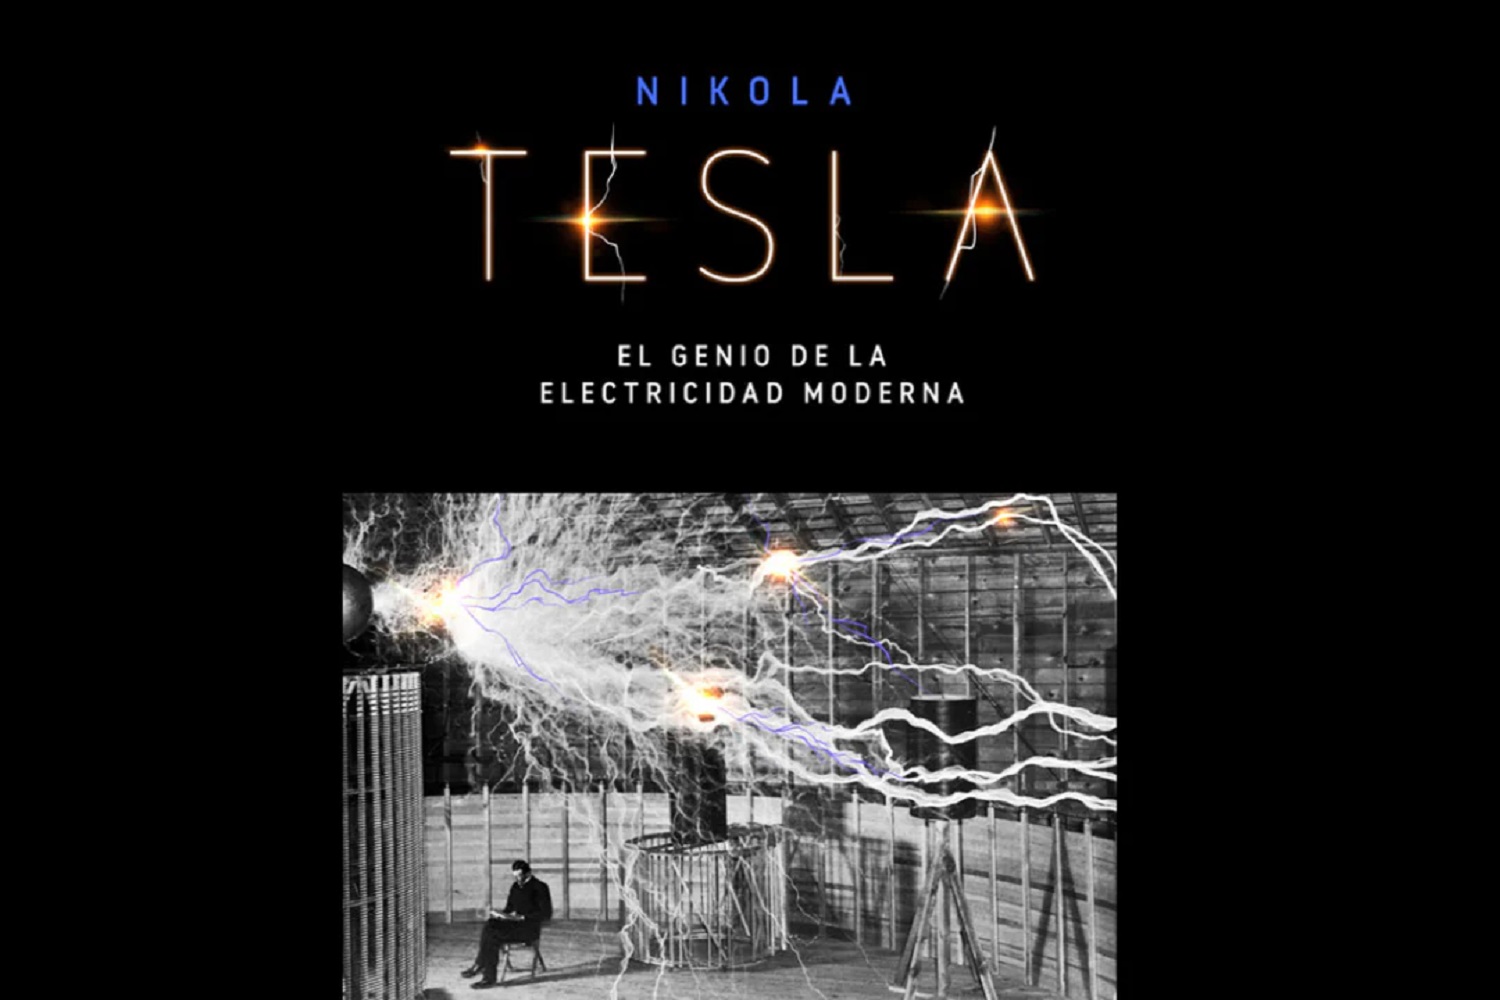 “Nikola Tesla. El genio de la electricidad moderna”